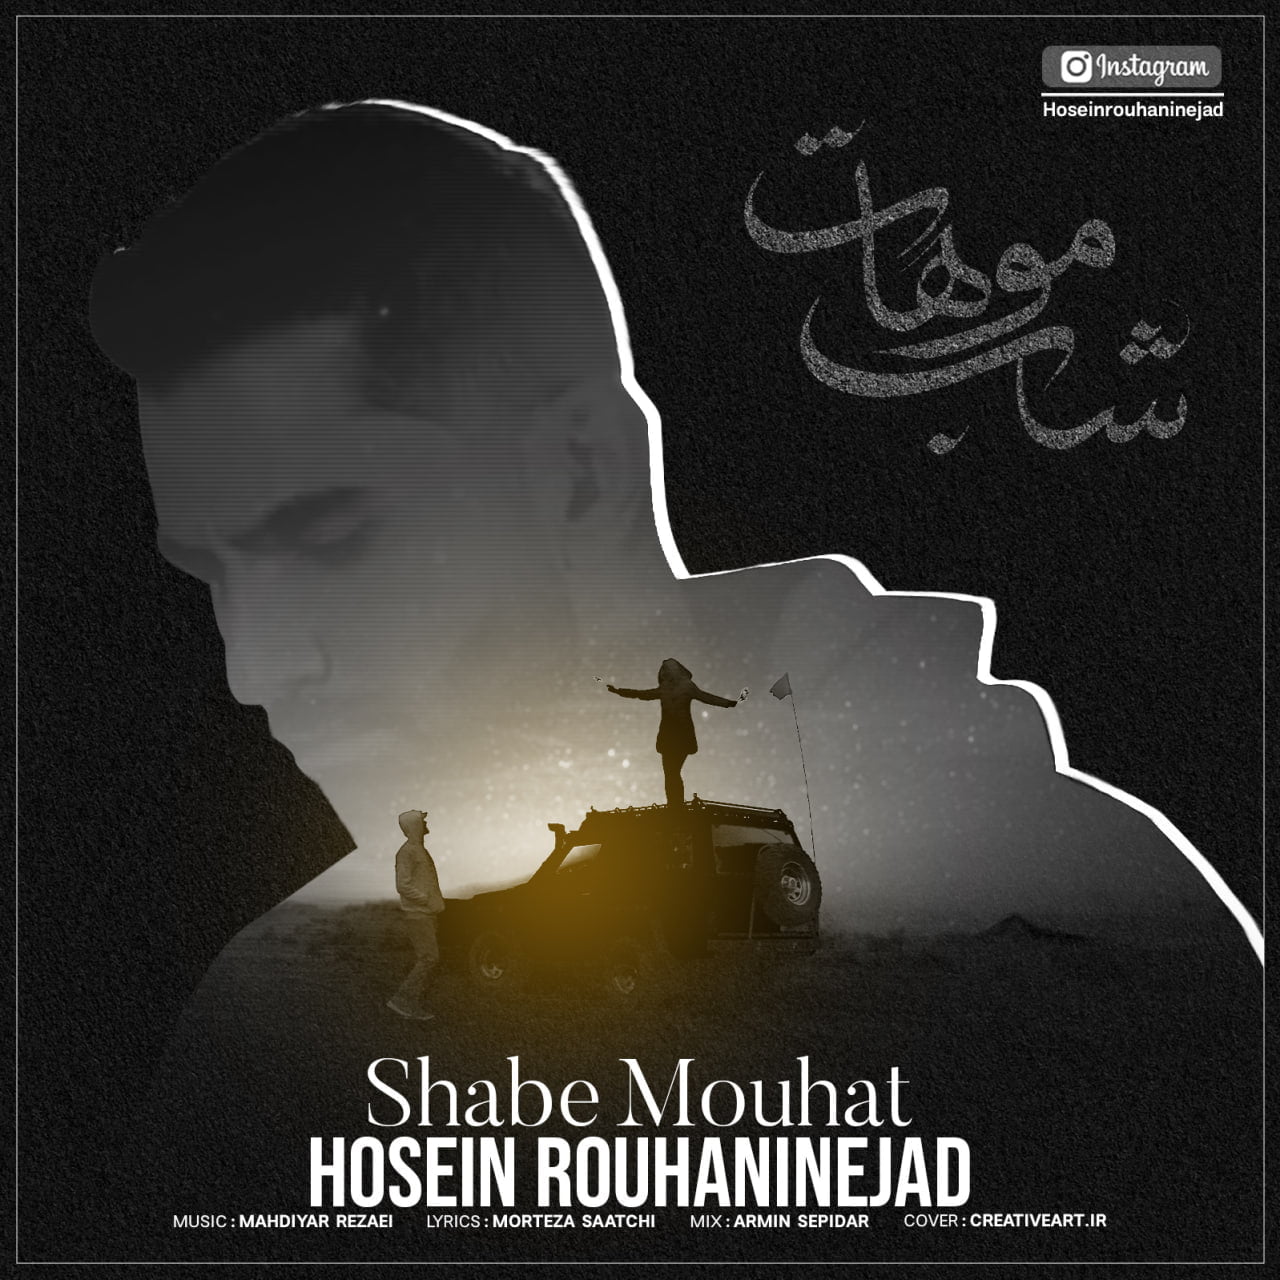 دانلود آهنگ جدید حسین روحانی نژاد با عنوان شب موهات